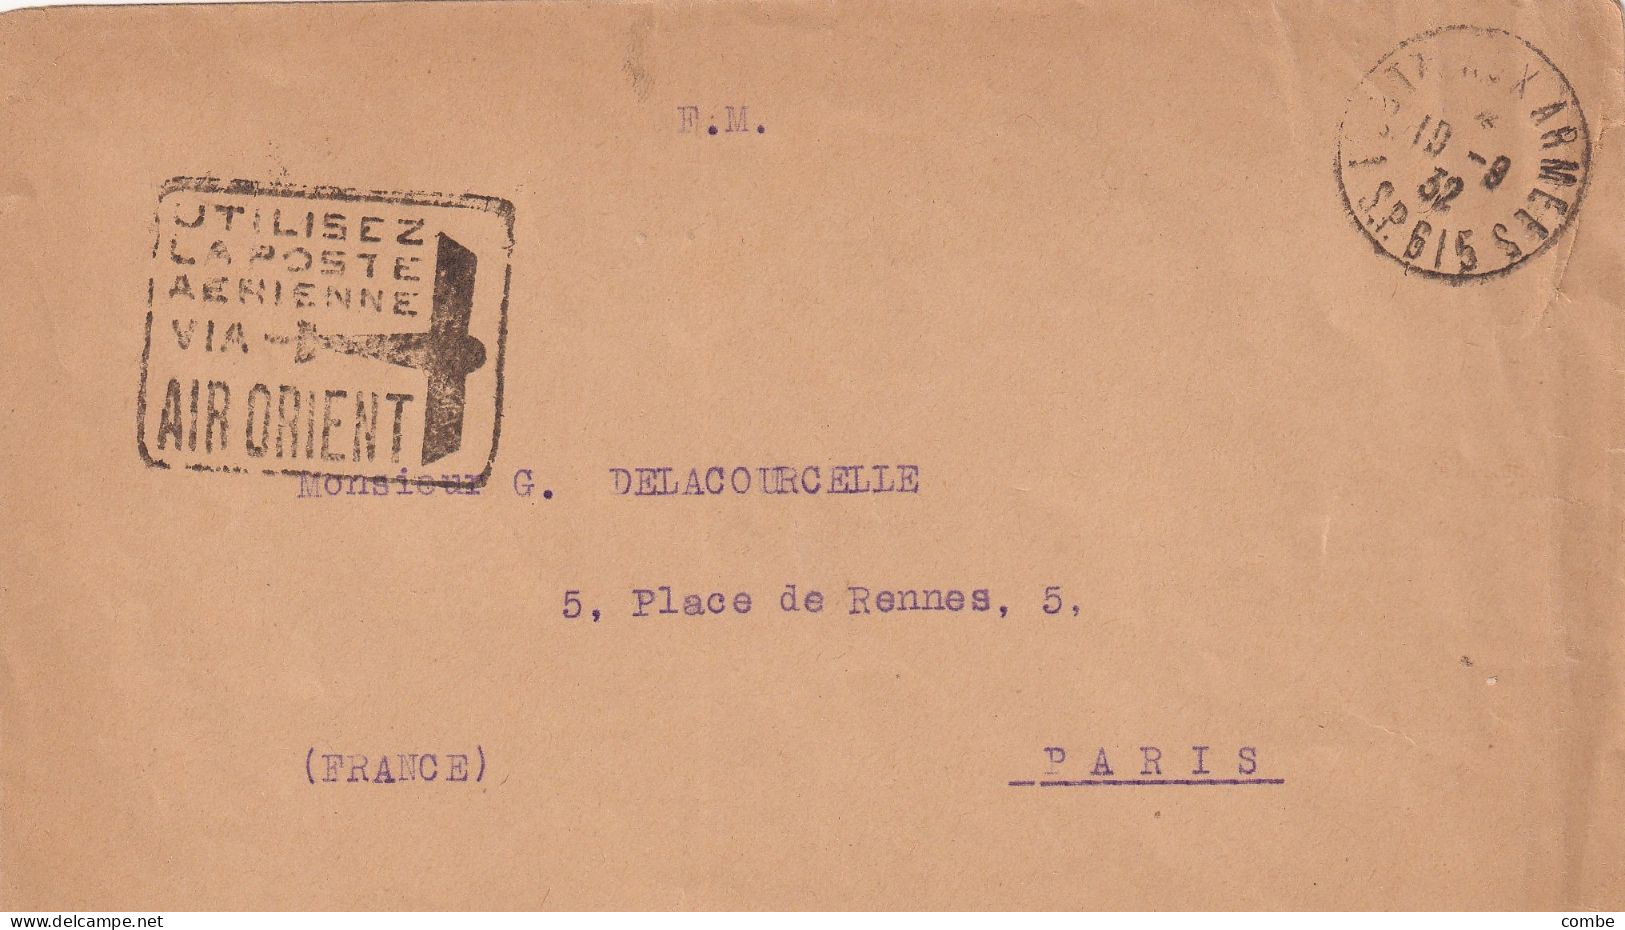 LETTRE. 19 8 1932. FM. SP 615. ALEP. SYRIE. UTILISEZ LA POSTE AERIENNE VIA AIR ORIENT. POUR PARIS - Covers & Documents